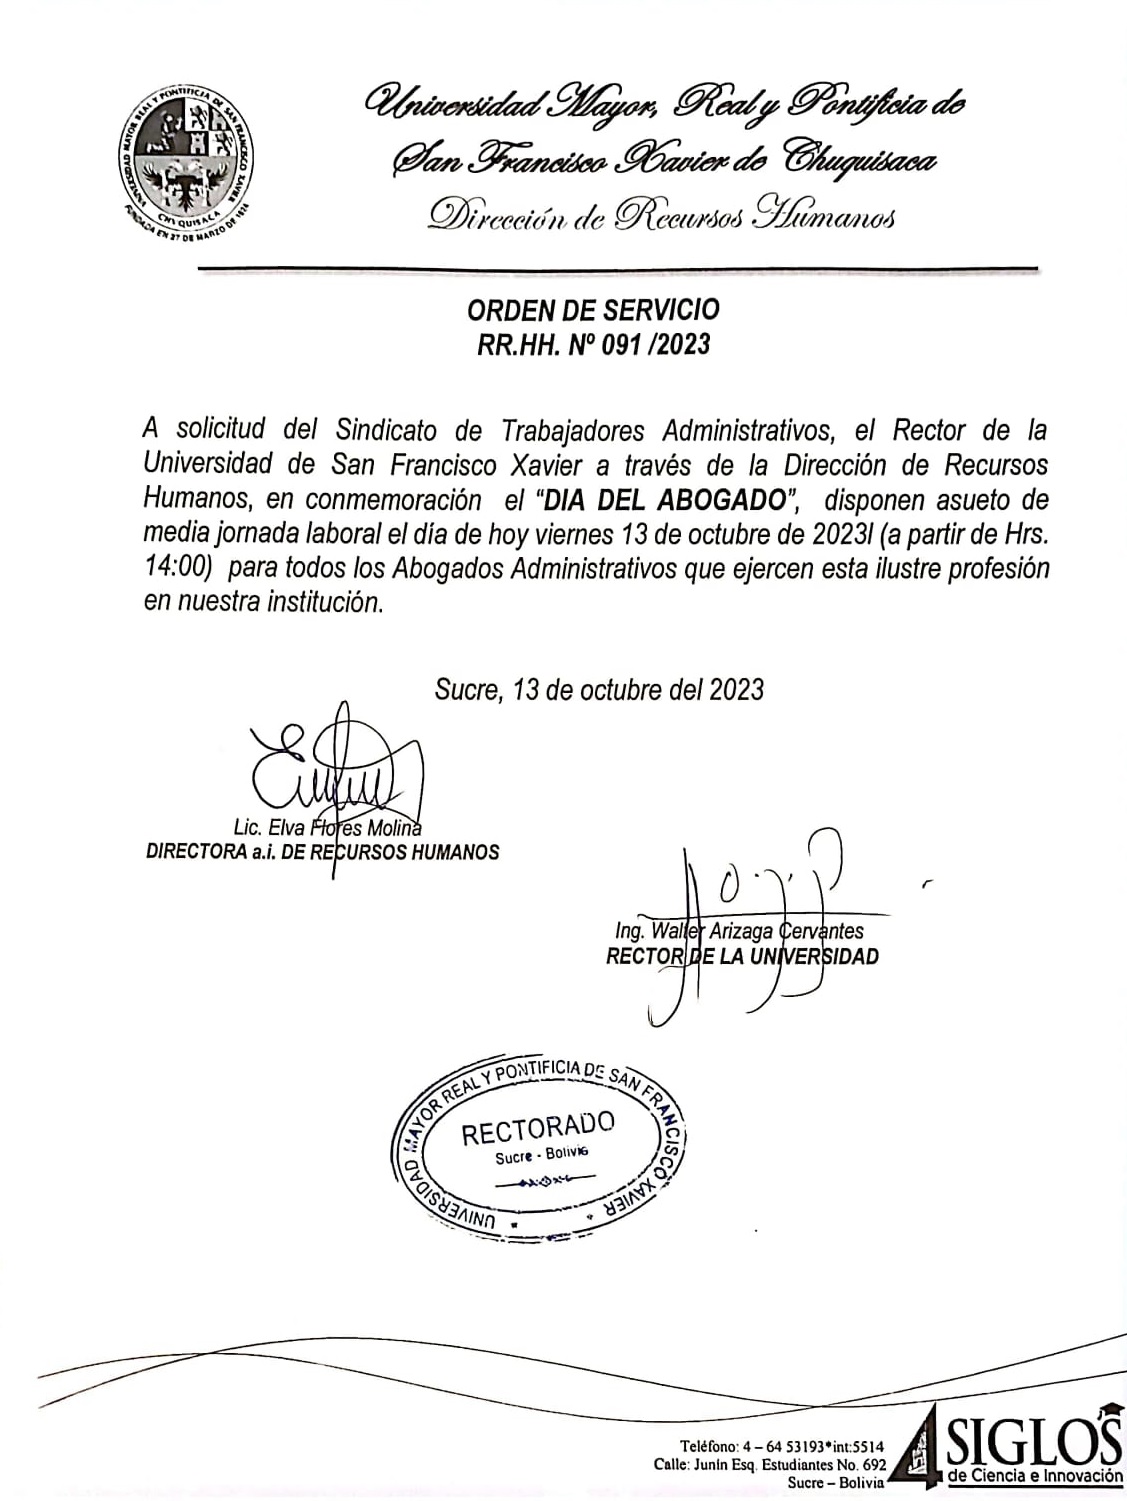 ORDEN DE SERVICIO RR.HH. Nº 091/2023, SUSPENSIÓN DE ACTIVIDADES ADMINISTRATIVAS DÍA DEL ABOGADO.